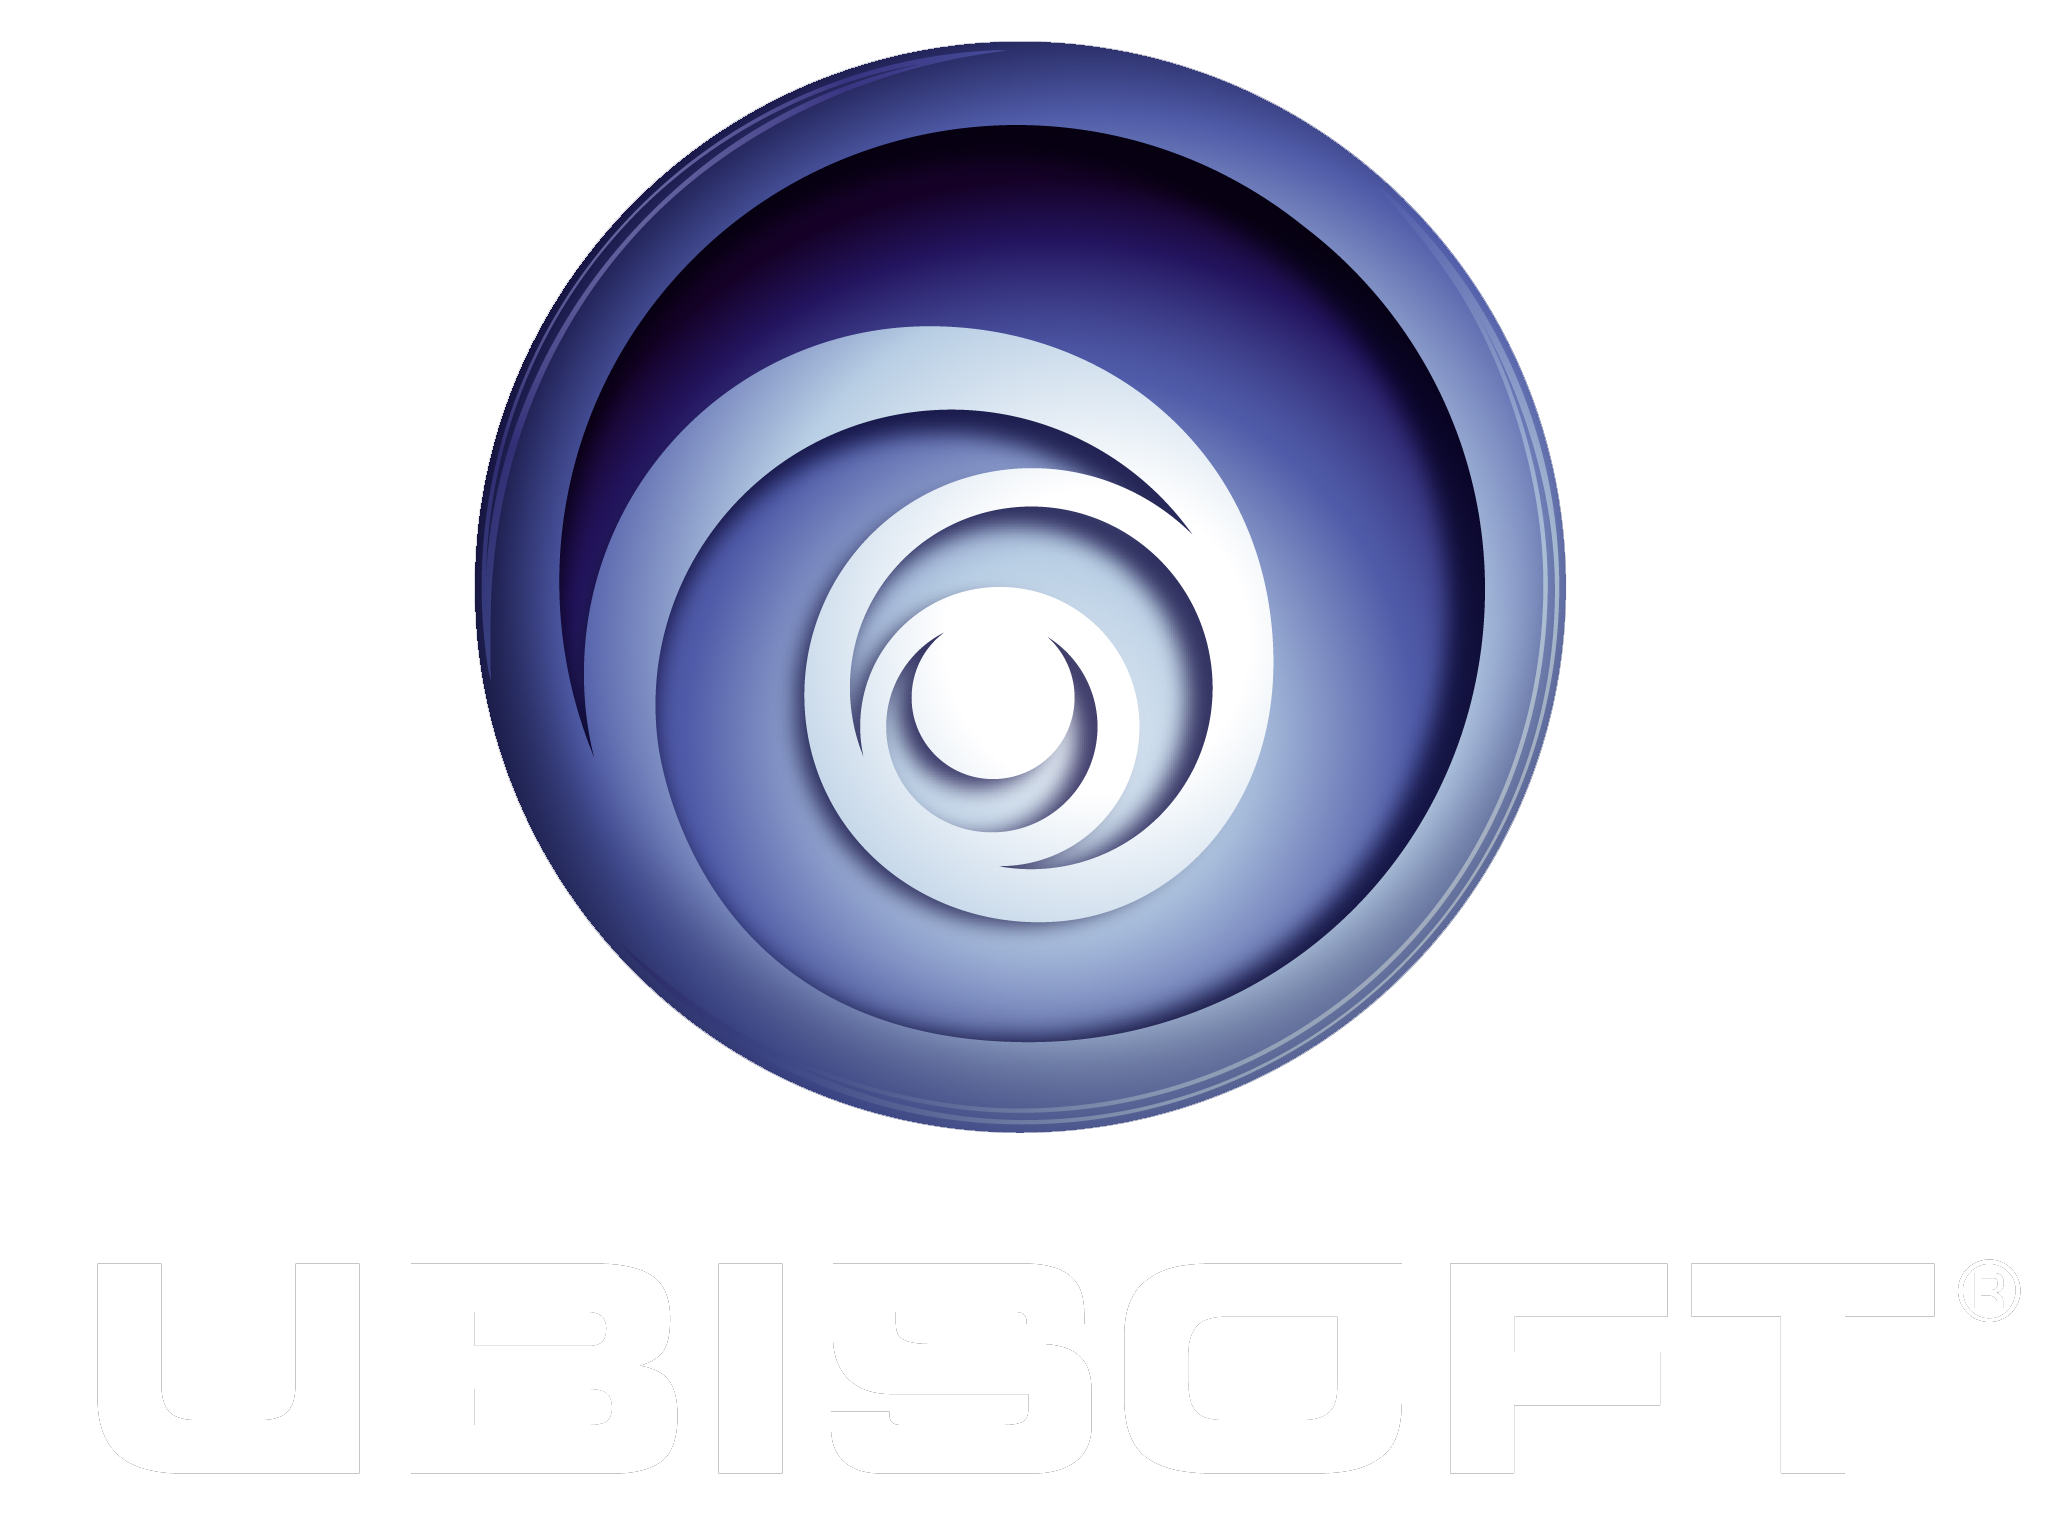 Kuva valmistajalle Ubisoft
